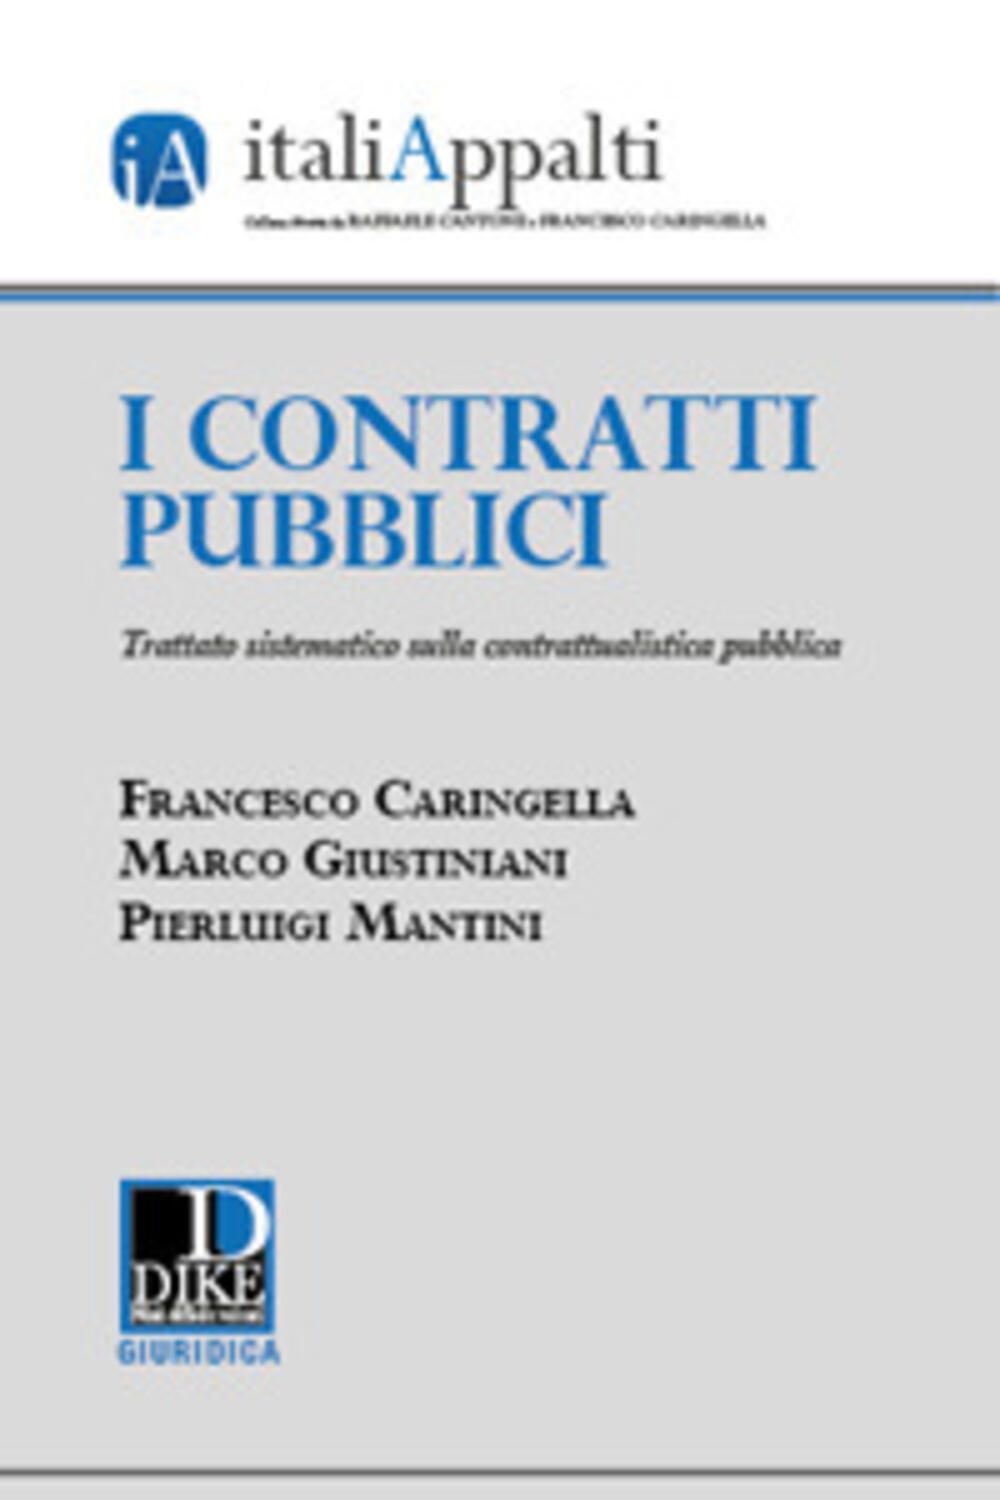 I contratti pubblici, Trattato sistematico sulla contrattualistica pubblica